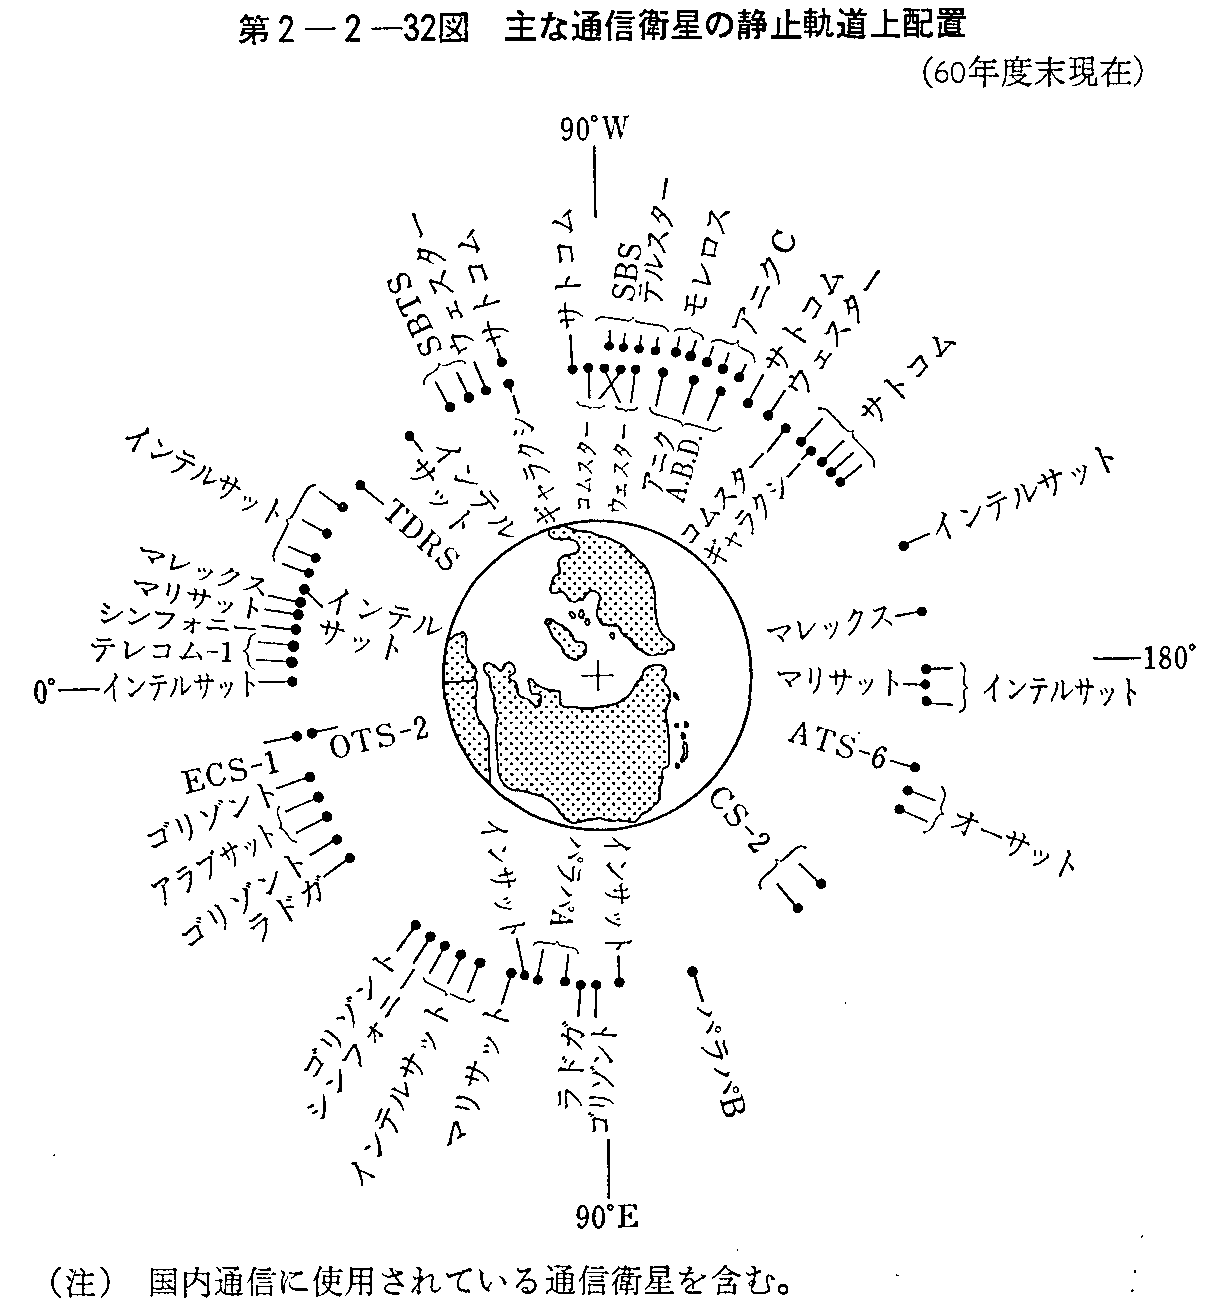 第2-2-32図 主な通信衛星の静止軌道上配置(60年度末現在)